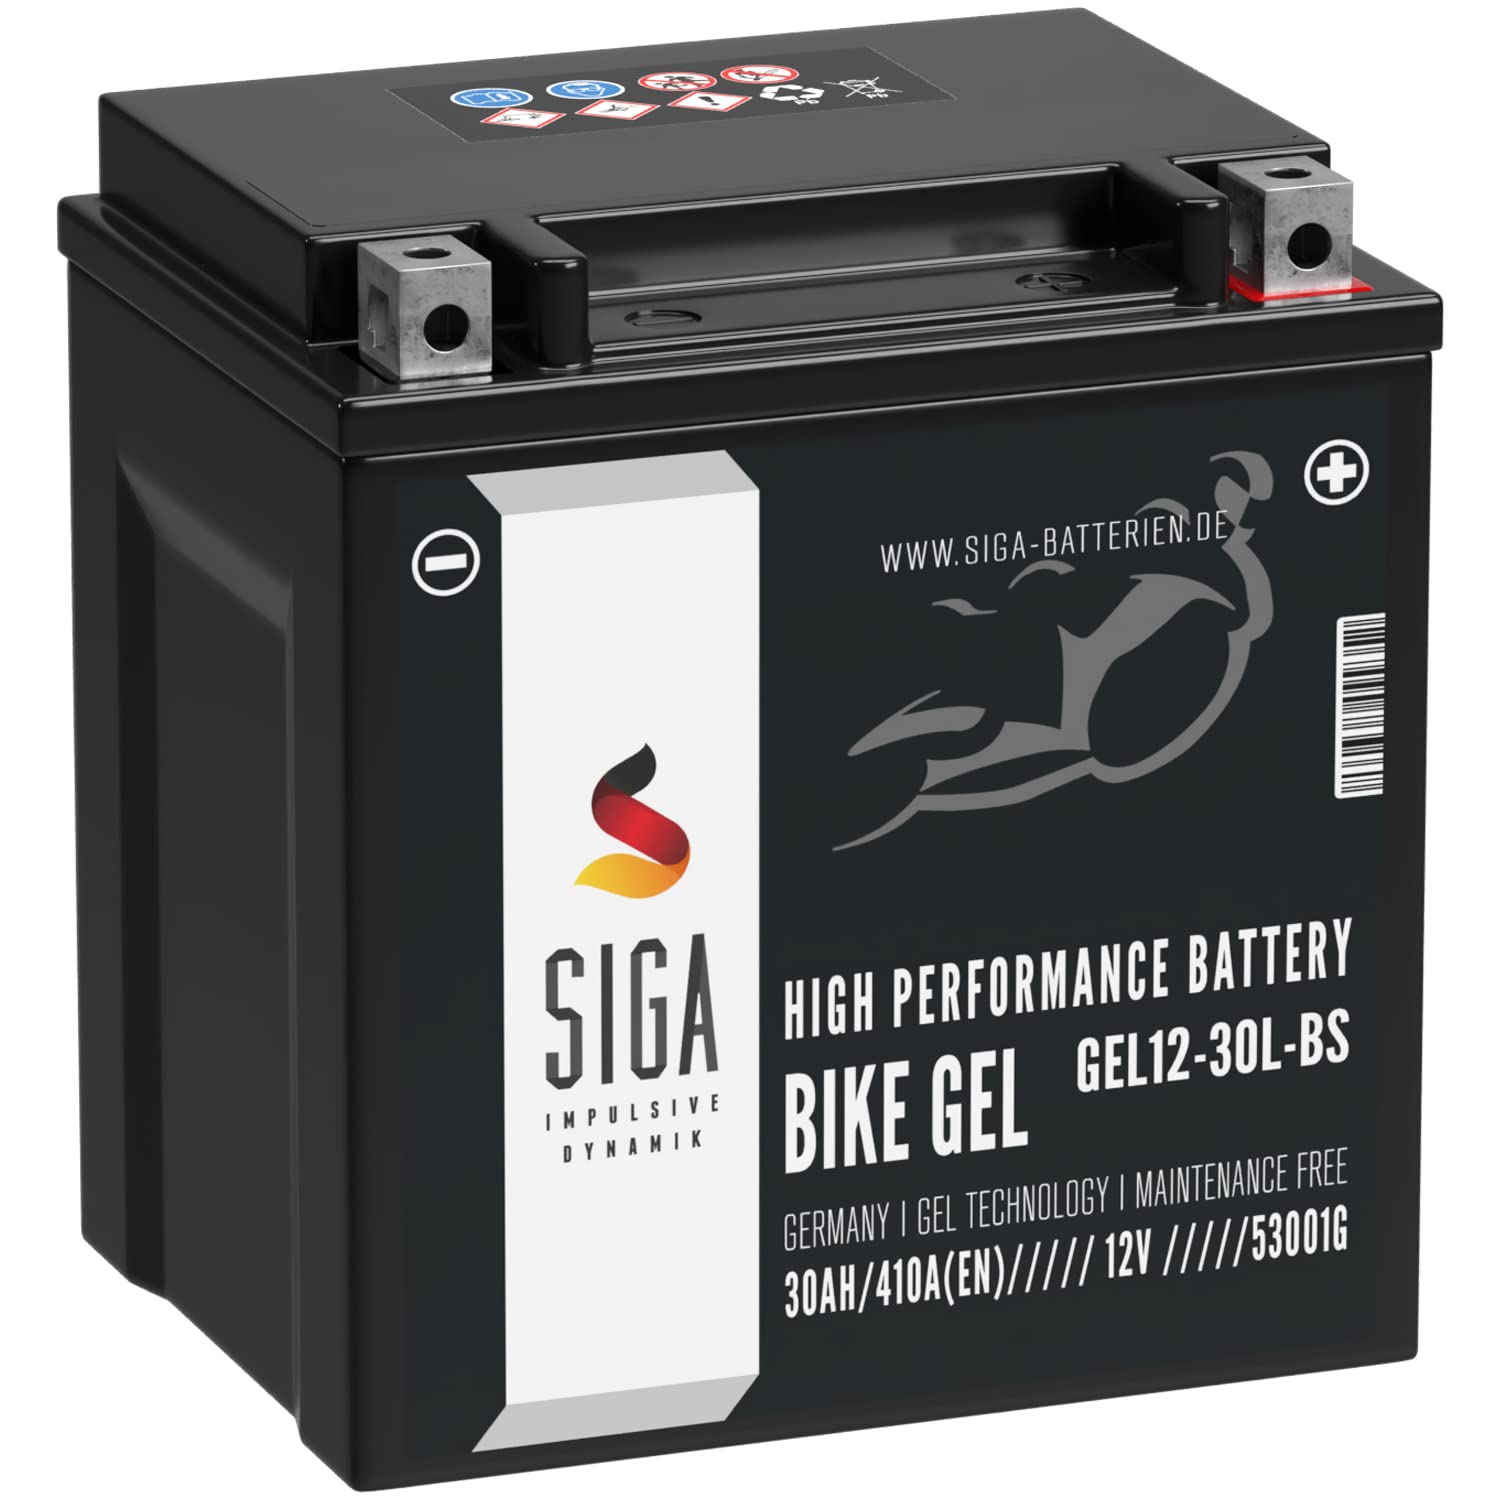 SIGA YIX30L-BS GEL Motorradbatterie 12V 30Ah 410A/EN 53001 GEL12-30L-BS GEL Batterie 12V GT30-3 YTZ30L-BS auslaufsicher wartungsfrei von SIGA IMPULSIVE DYNAMIK